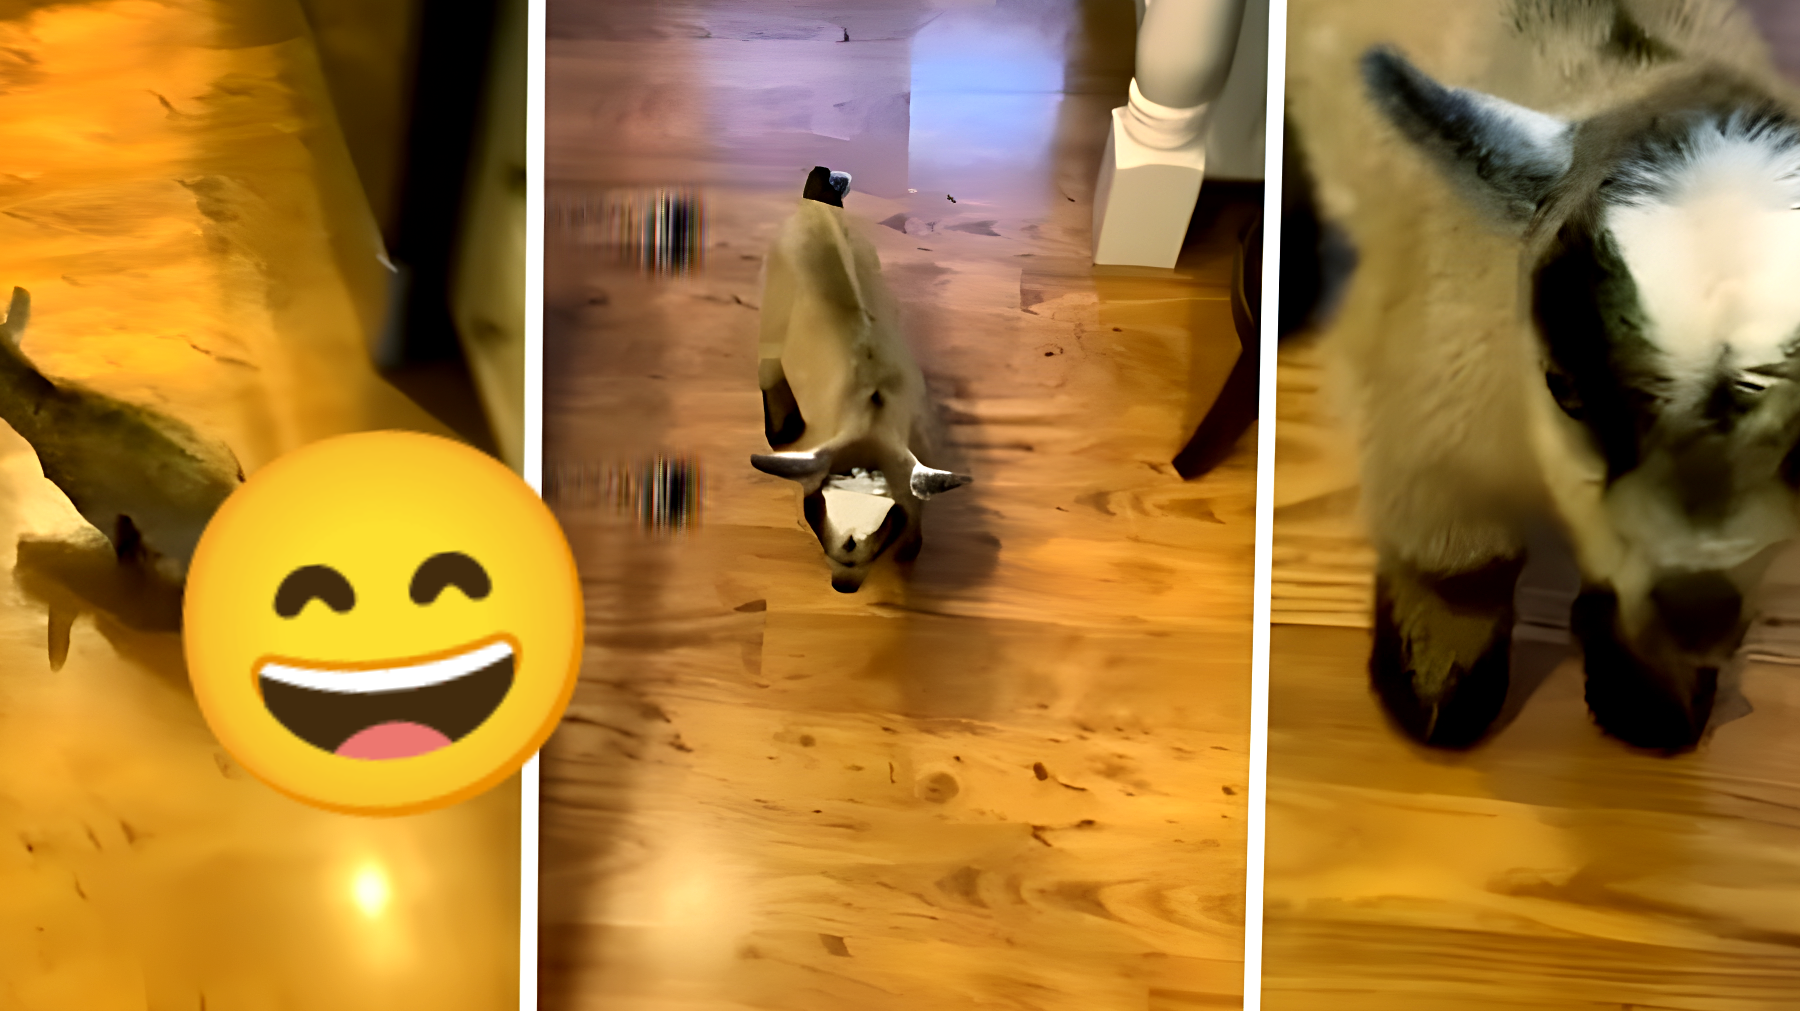 La commovente reazione di una capretta domestica quando ha fame: il video che sta facendo impazzire il web!